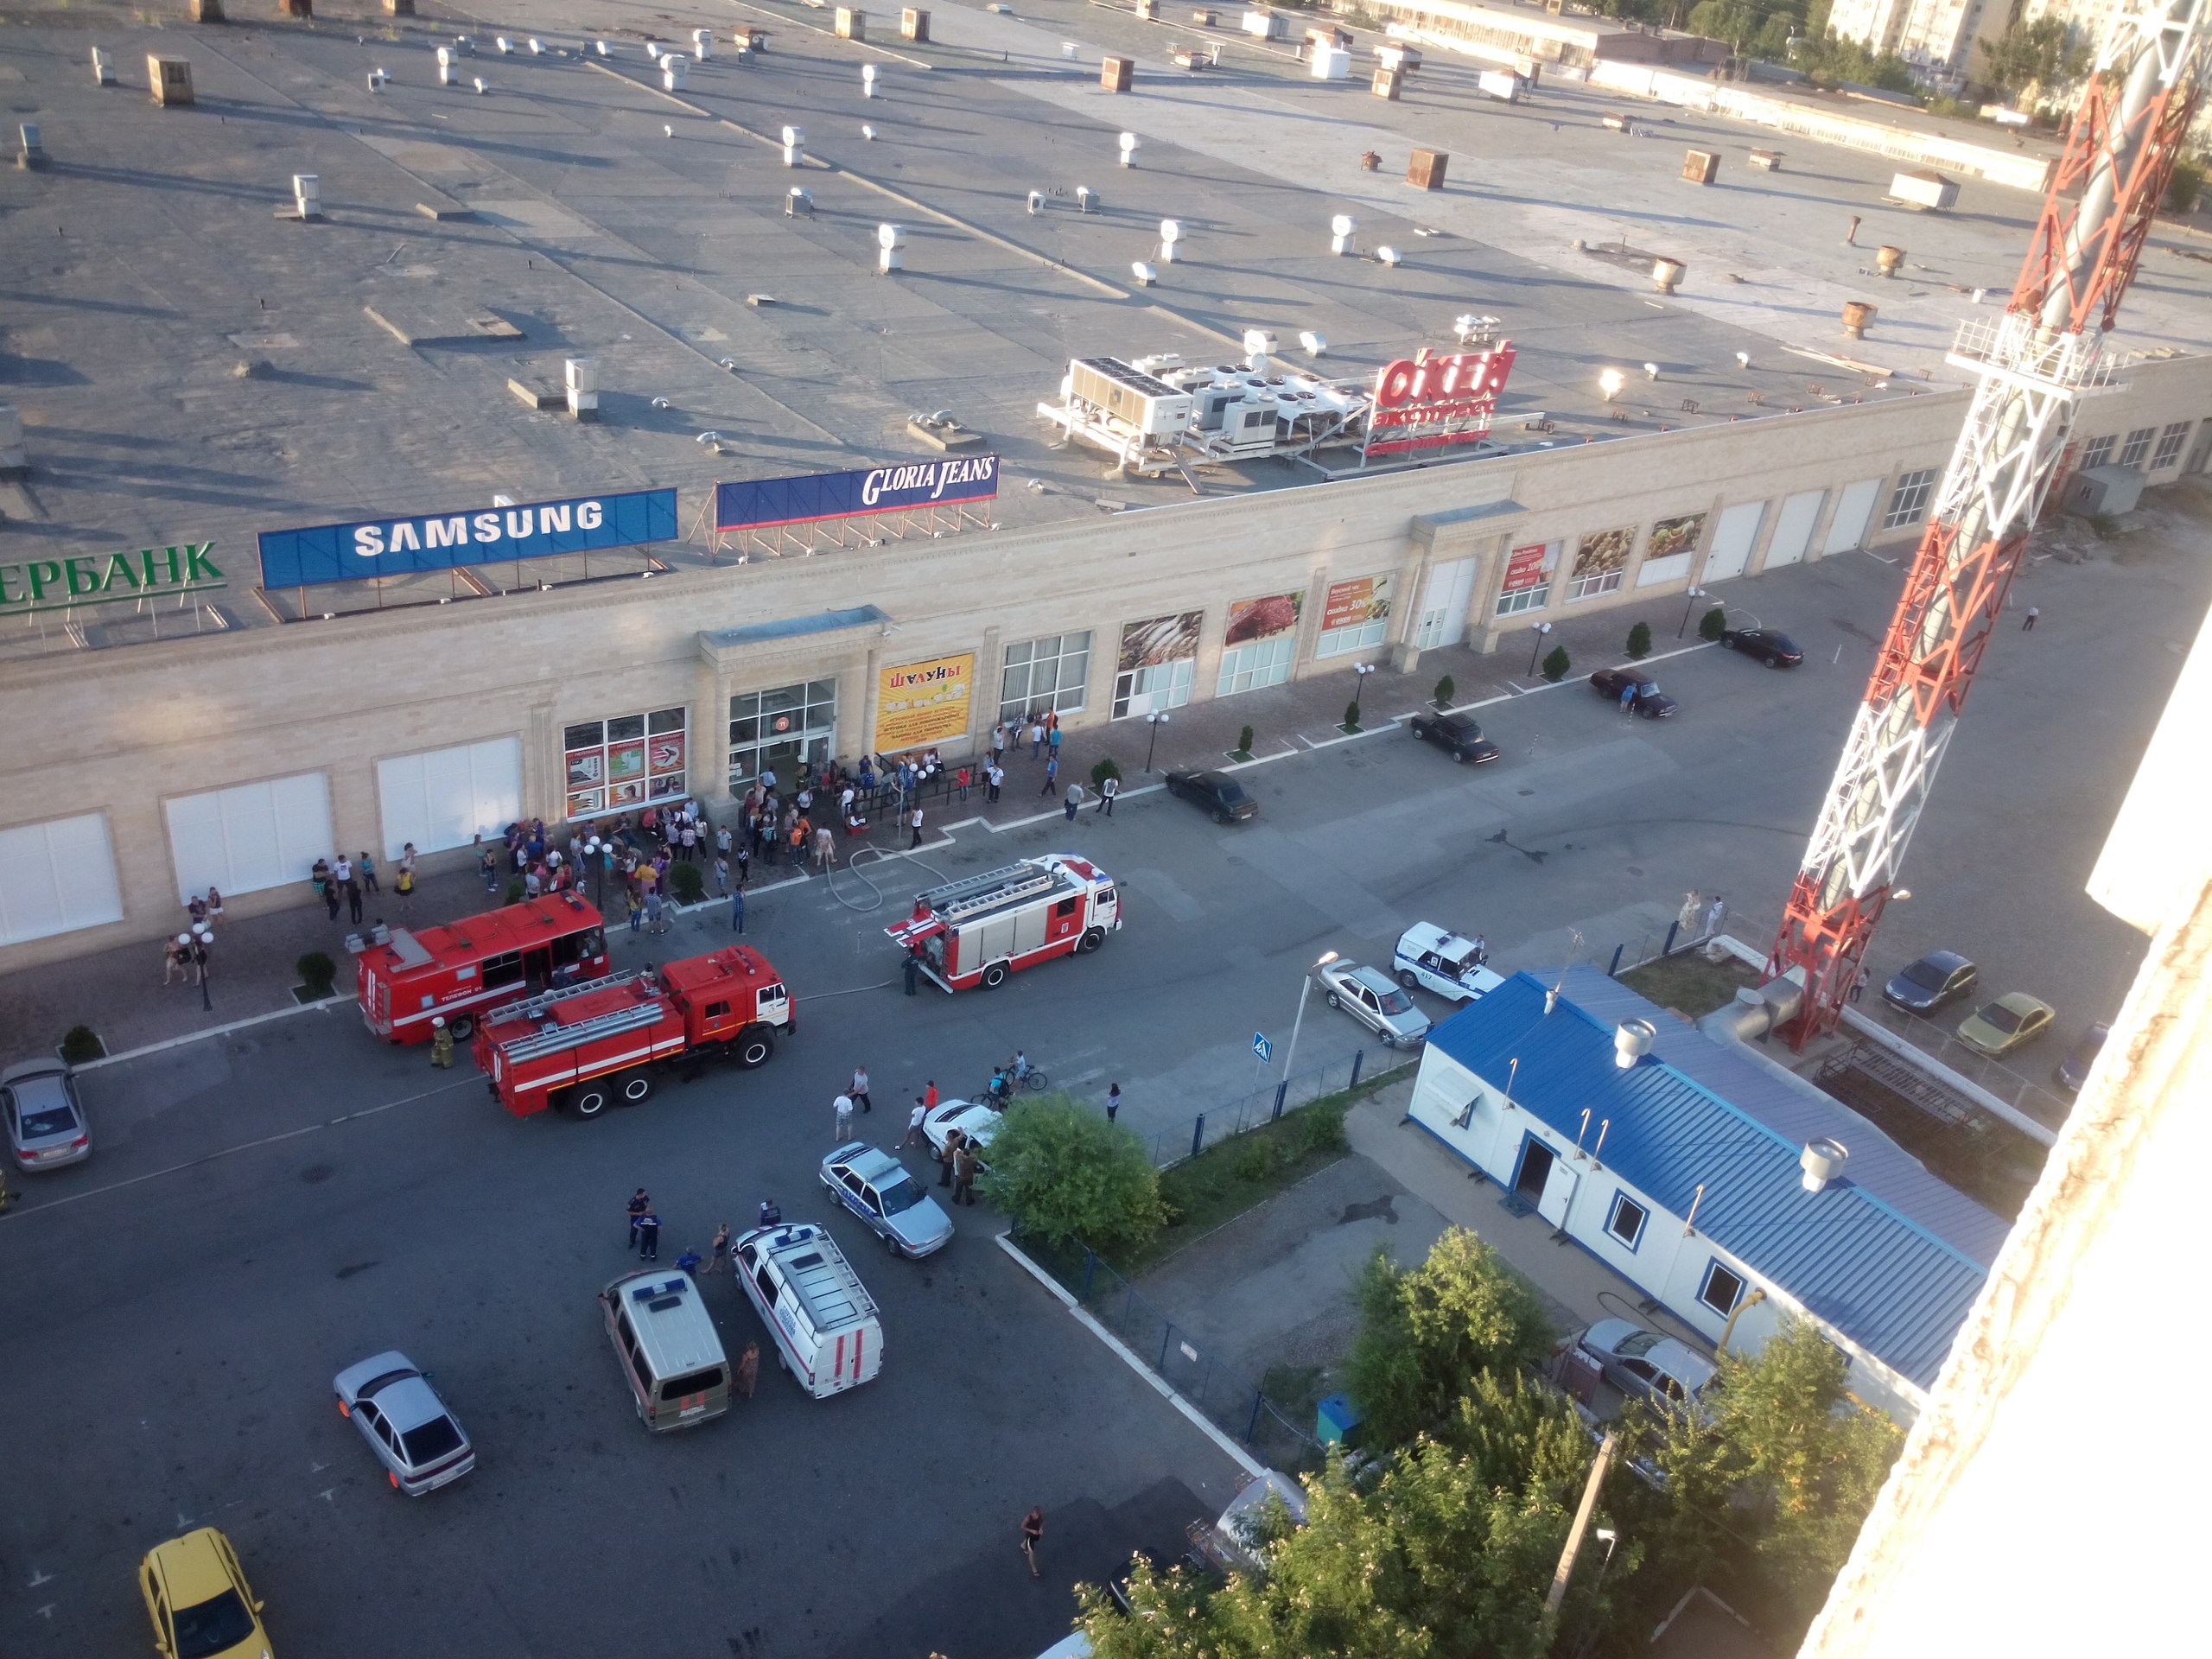 images novosti2 Proisshestviya dtkac9iofmq В Астрахани произошёл пожар в торговом центре